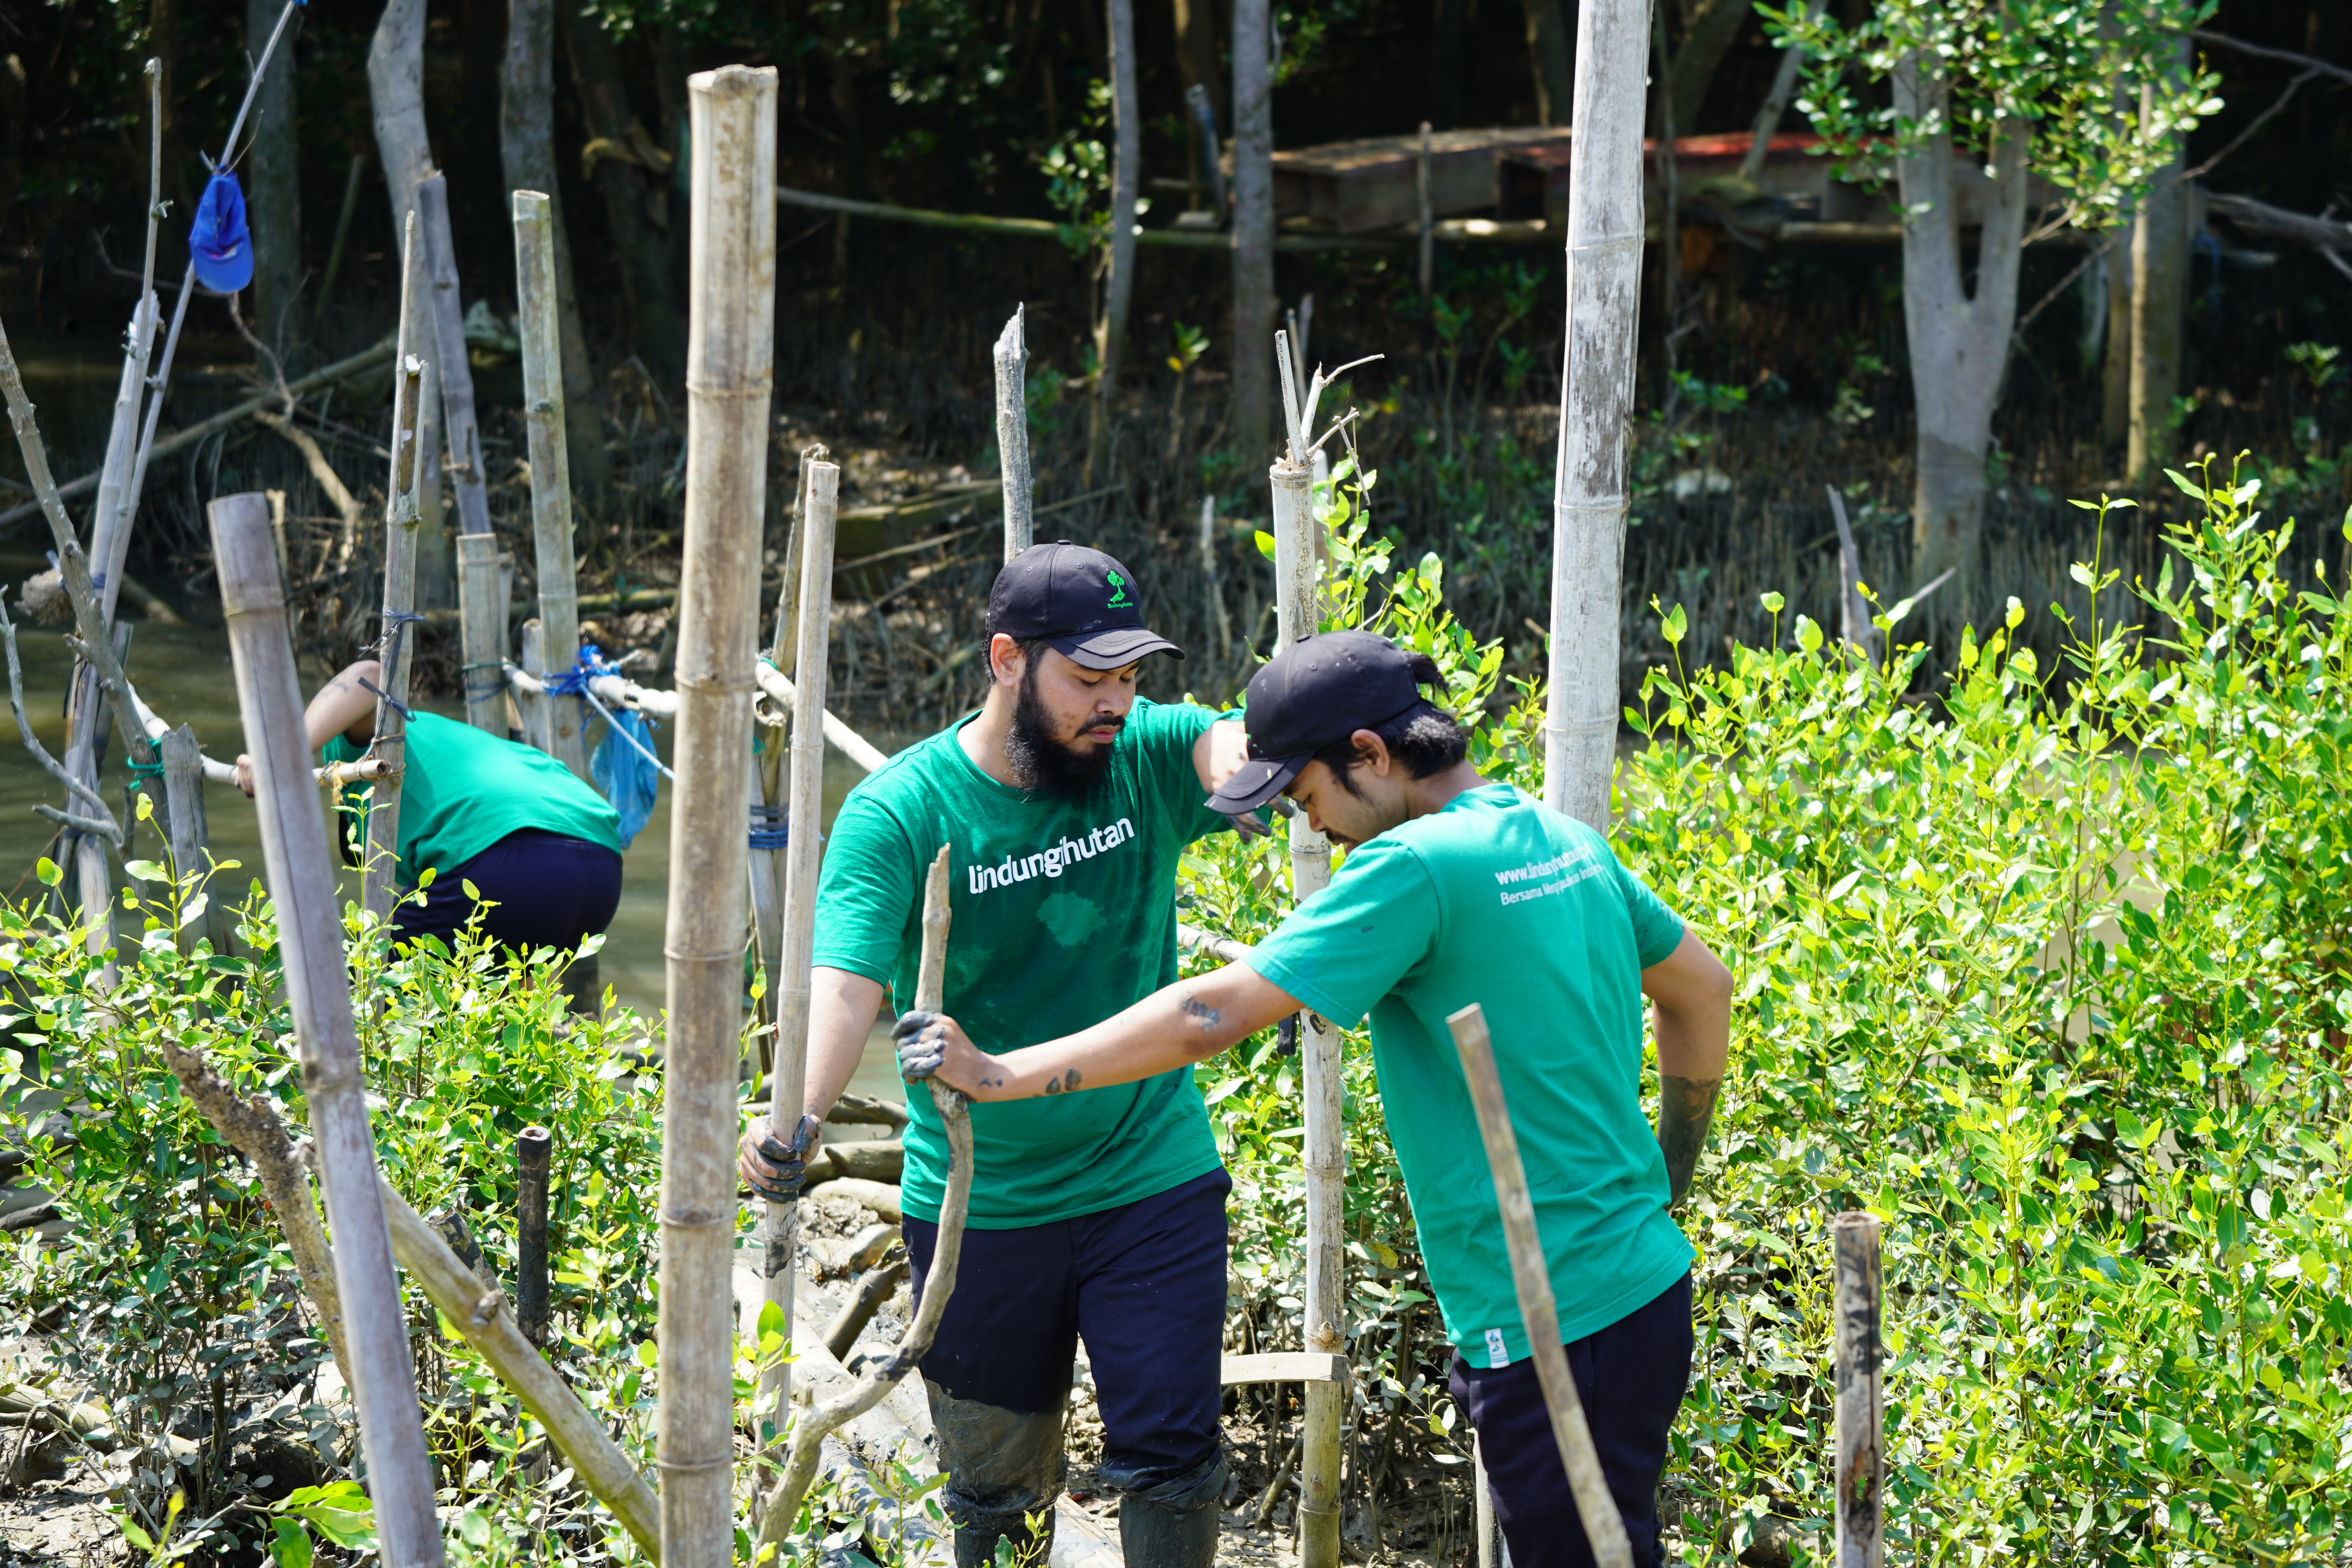 Ben dan LindungiHutan tanam mangrove di pesisir Kota Semarang.